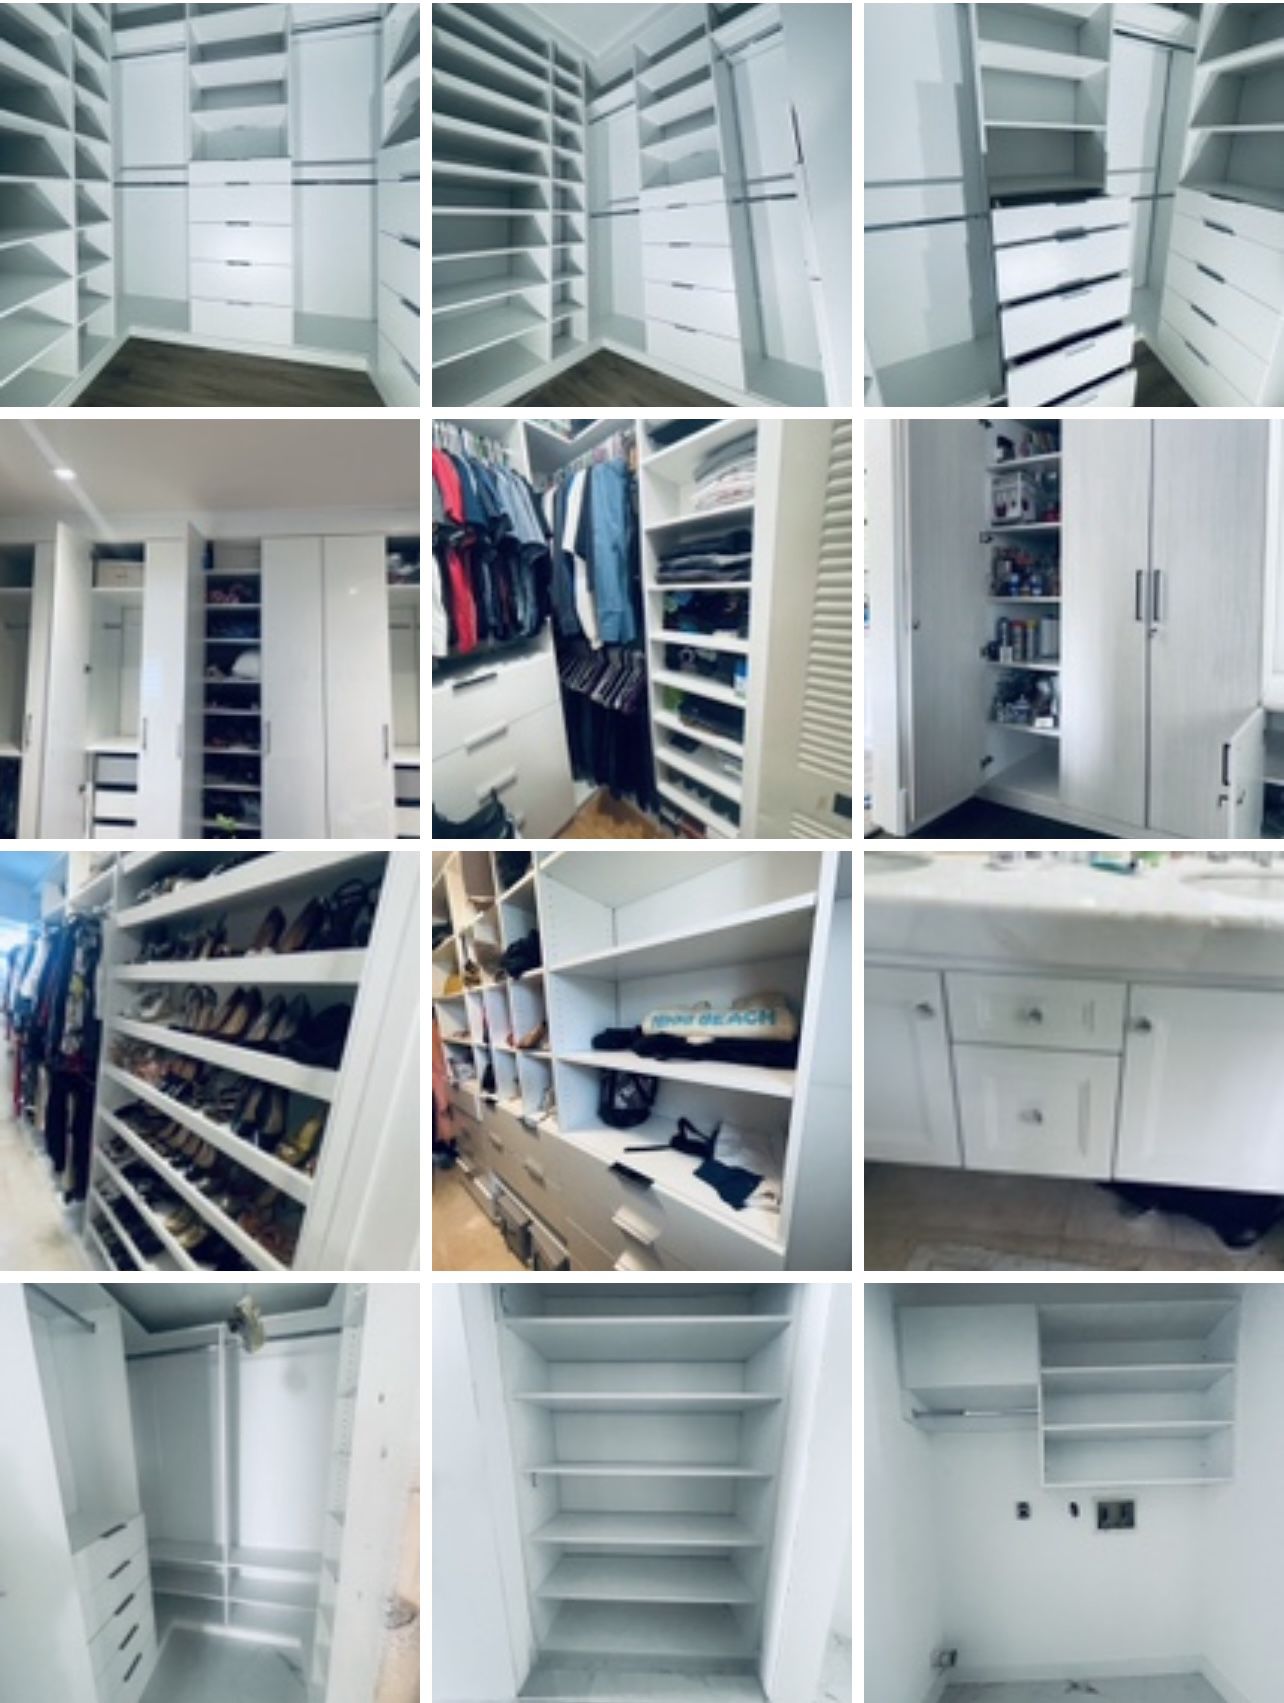 Closet Organizer Storage Cabinets 